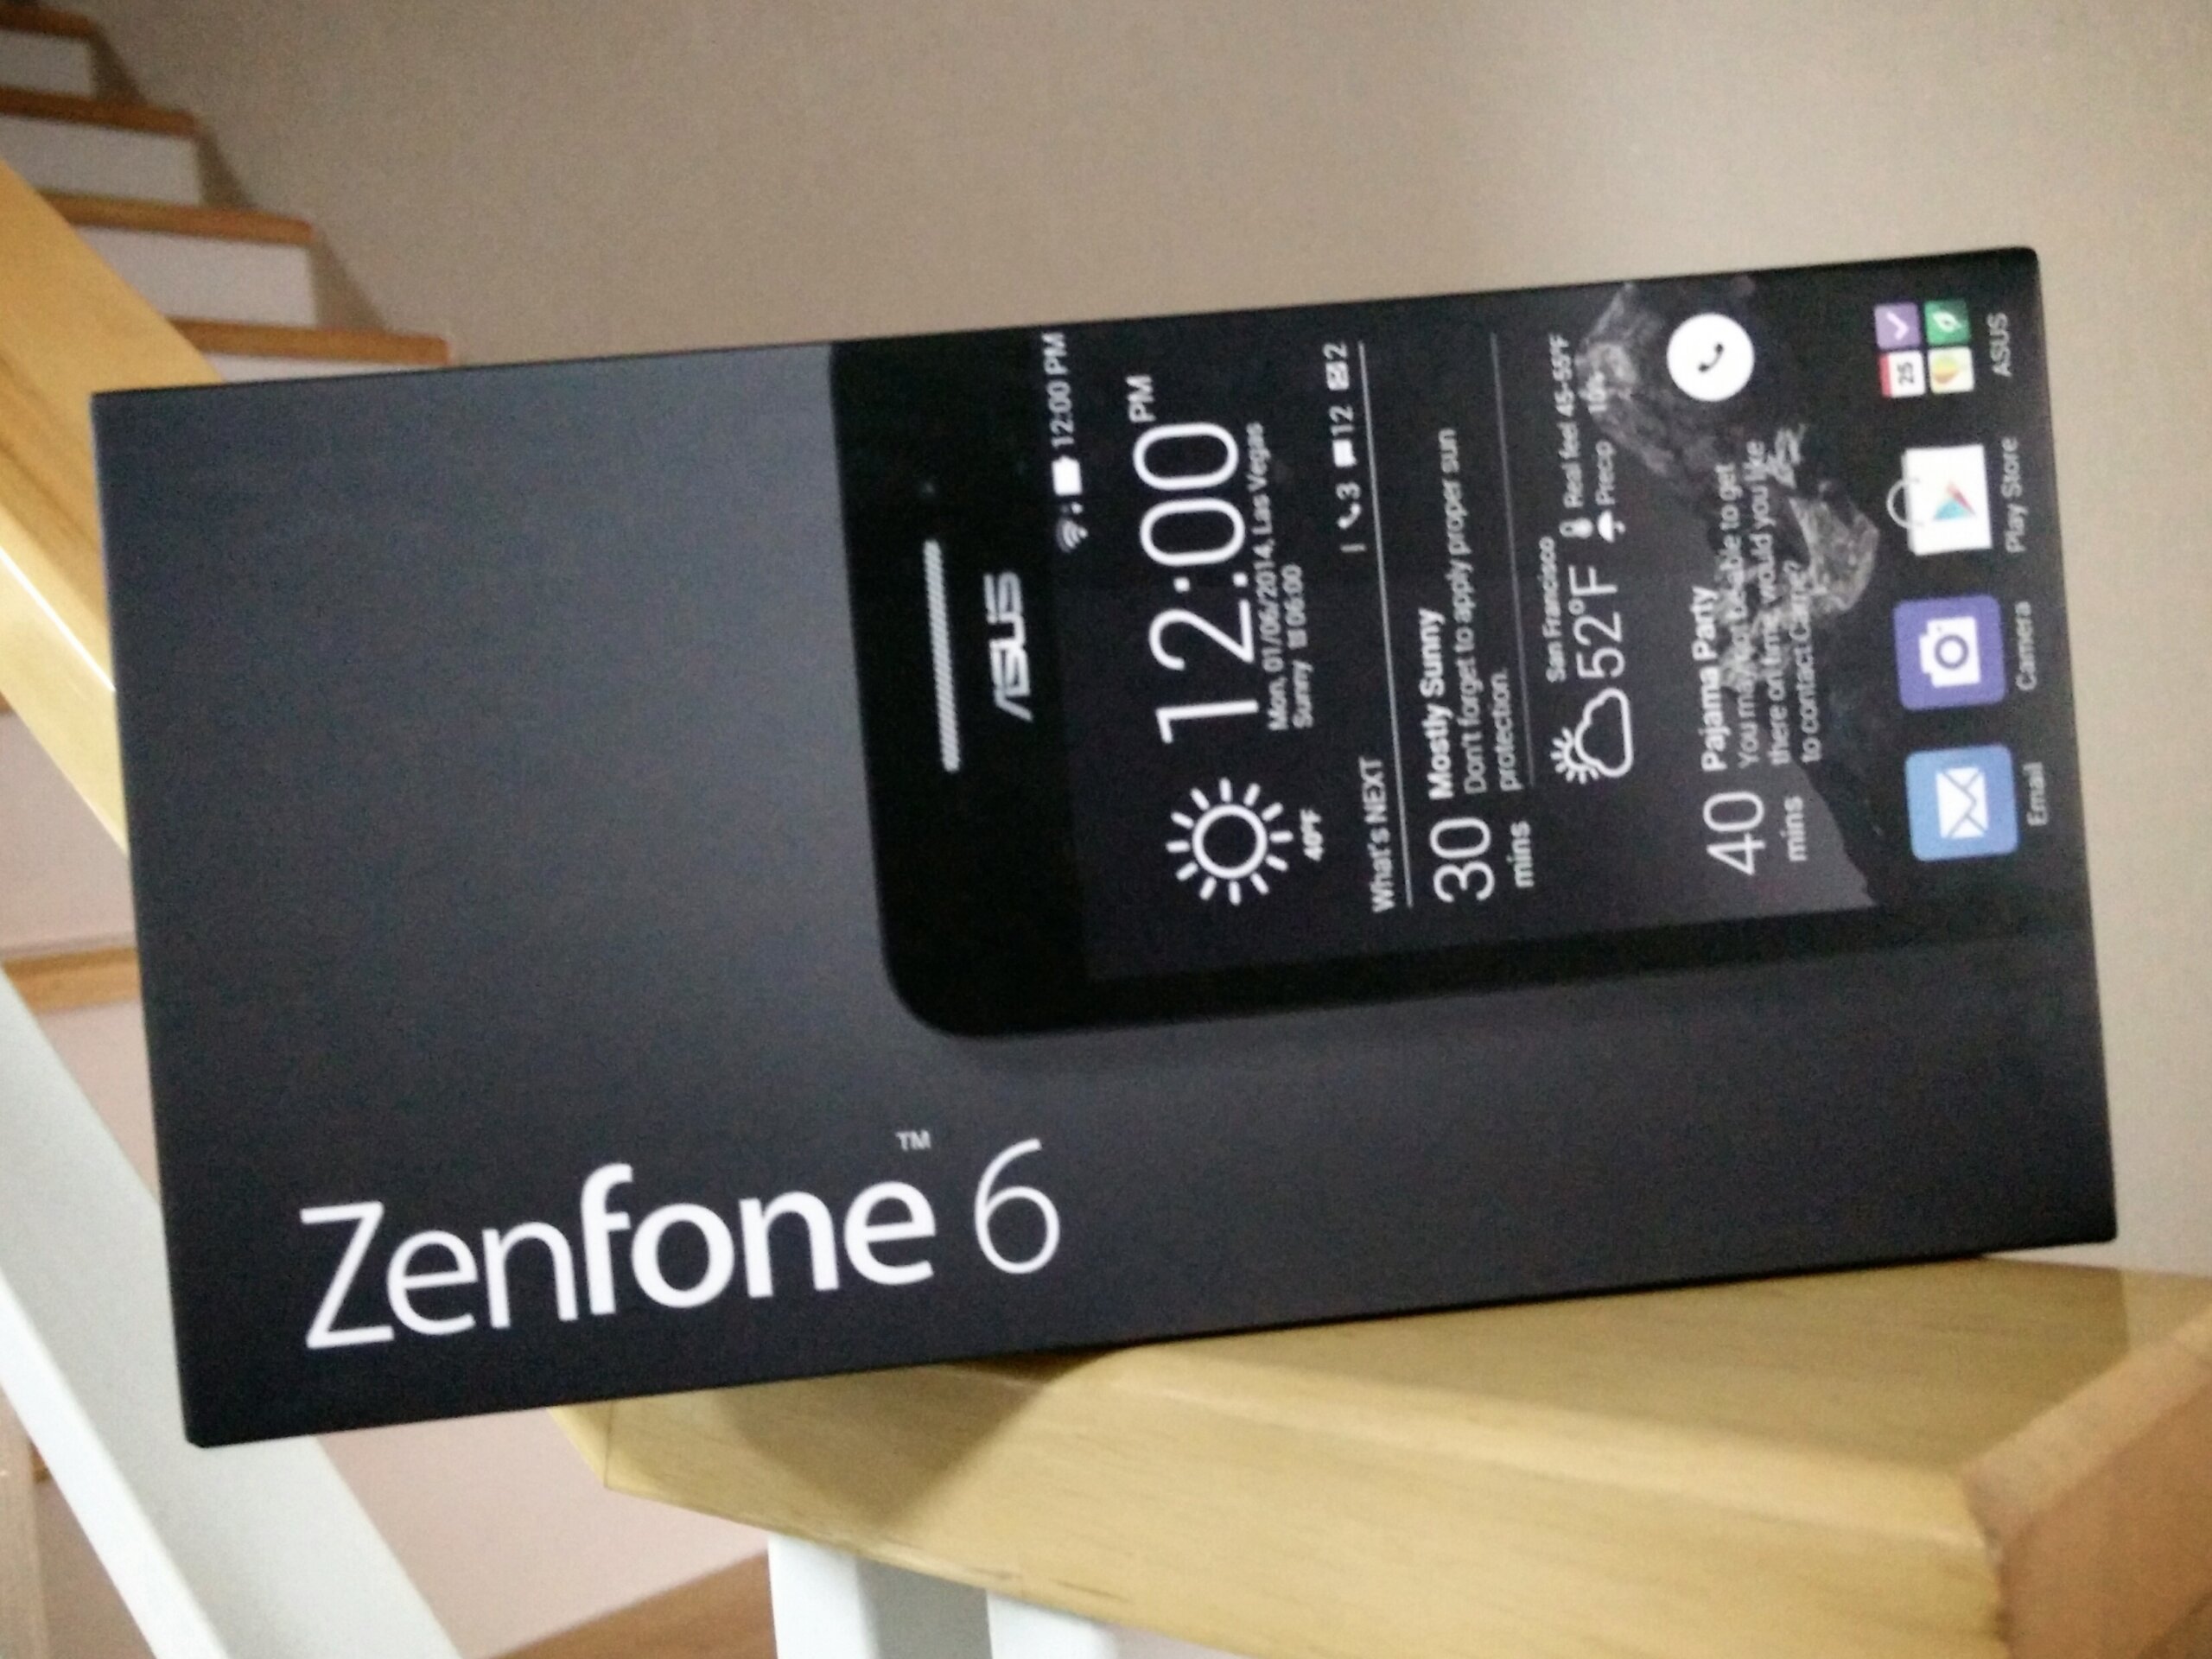 ซื้อ Asus Zenfone 5 และ Zenfone 6 ได้ในงาน Commart Next Gen 2014 มีขายชัวร์